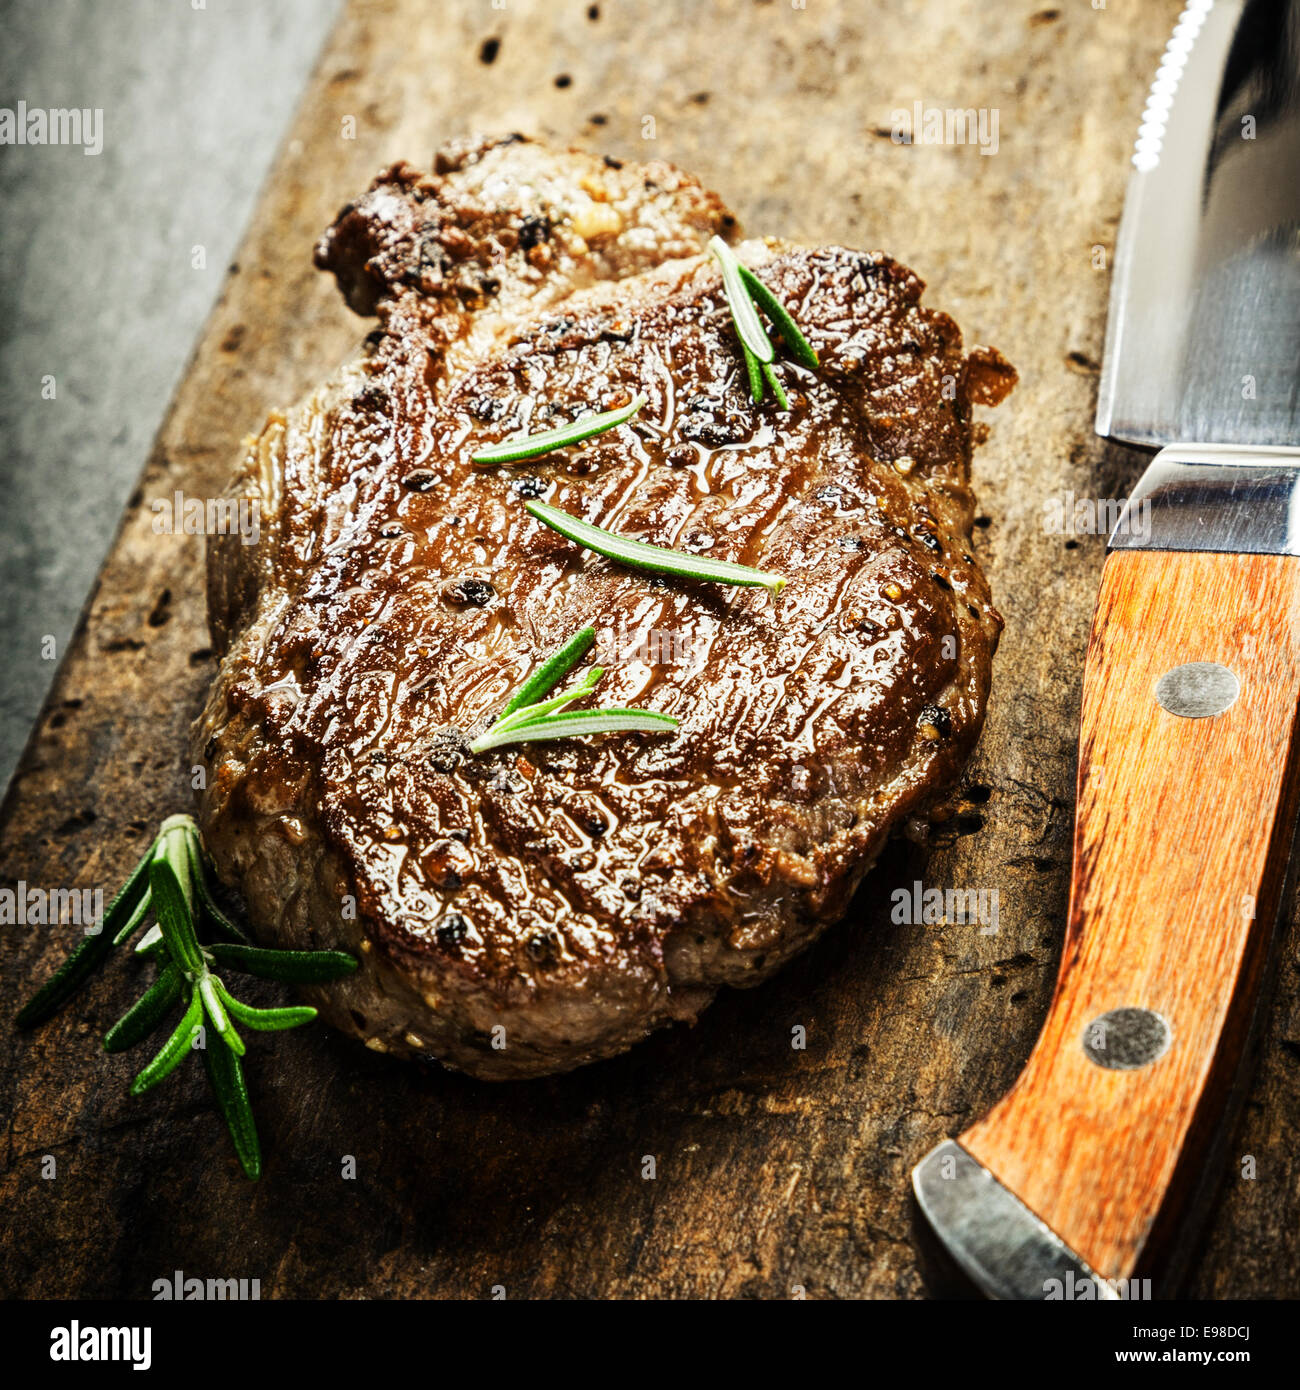 Saftige Portion gegrilltes Rindersteak, garniert mit frischem Rosmarin auf eine rustikale Schneidbrett aus Holz mit einem Steak-Messer für ein Gourmet-Menü Stockfoto